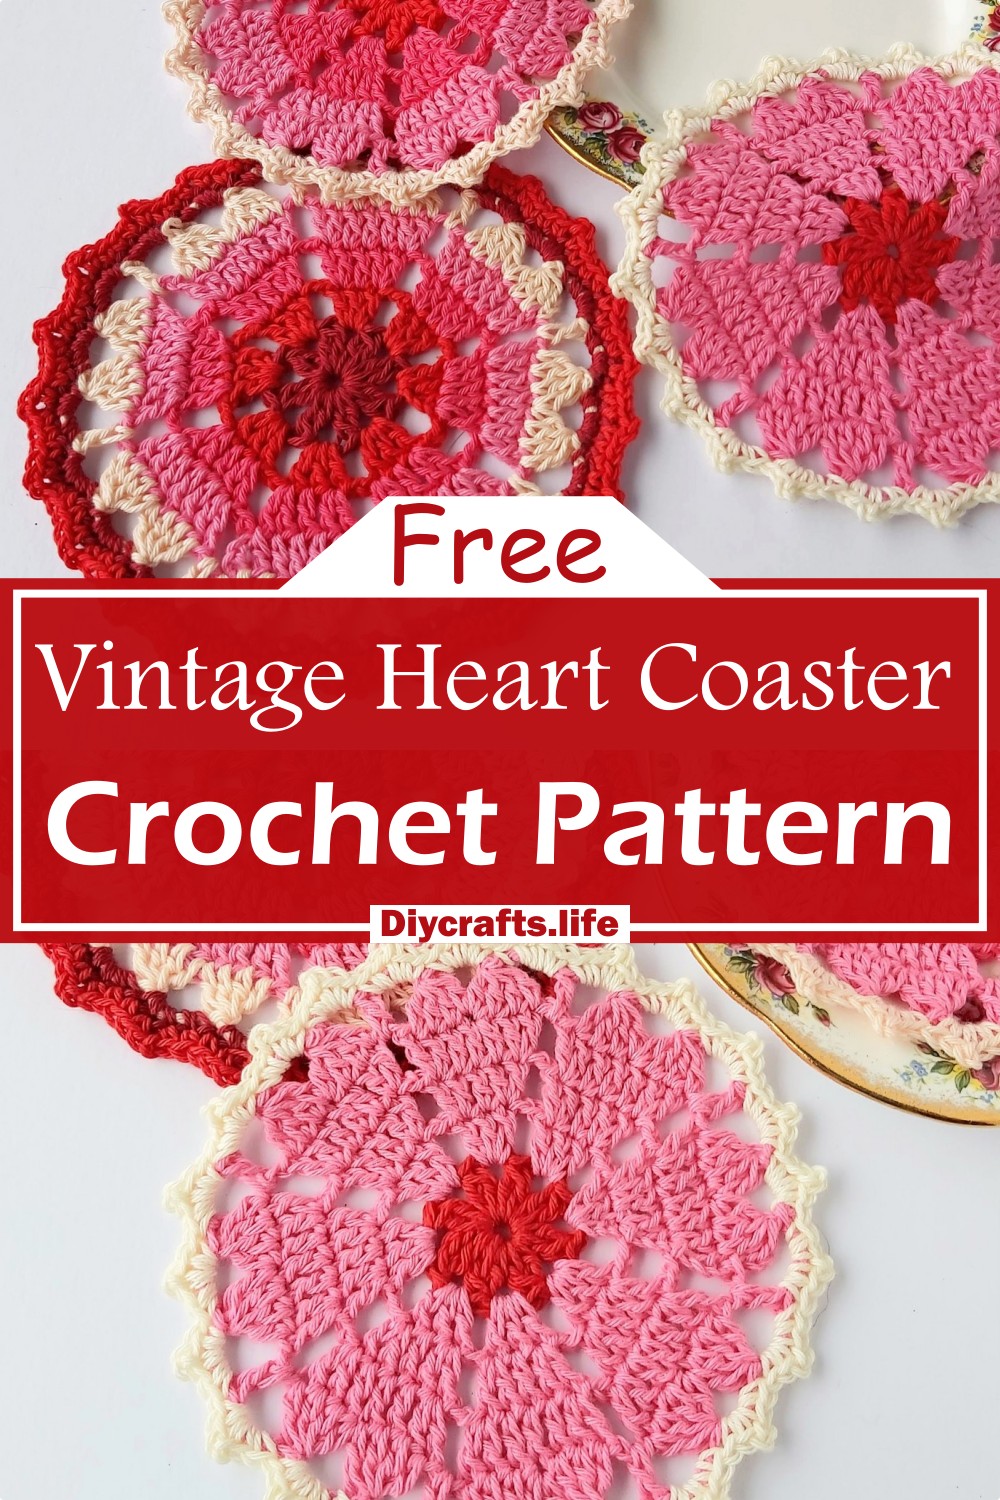 Crochet Vintage Heart Coaster Pattern